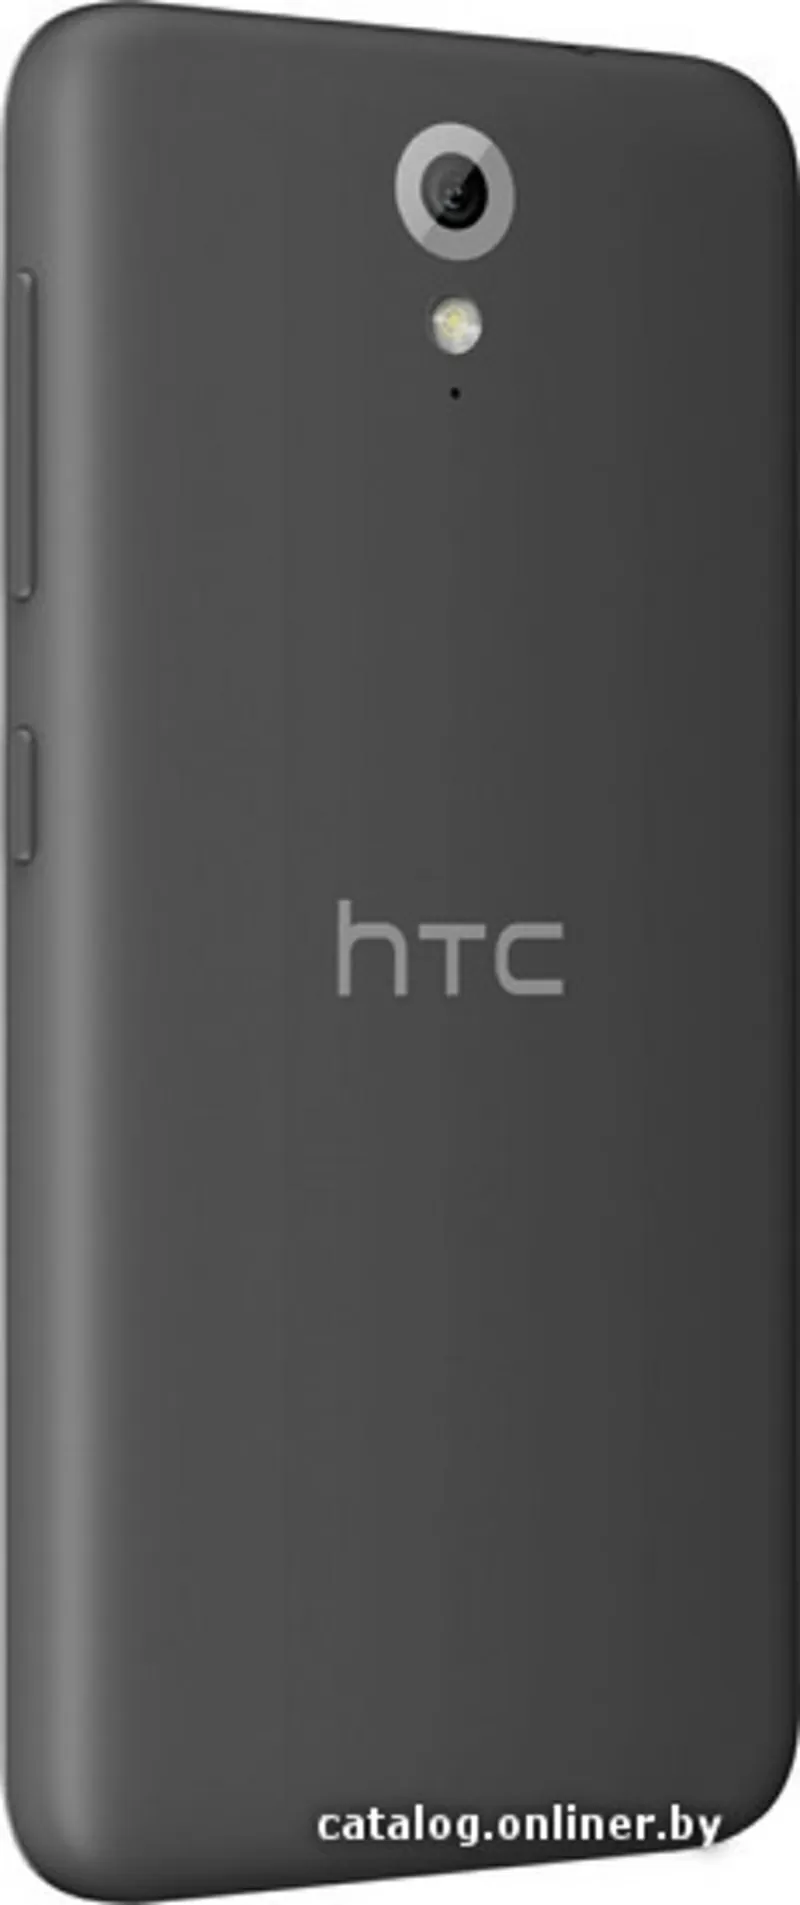 Продам HTC Desire 620G dual sim Tuxedo Gray 2